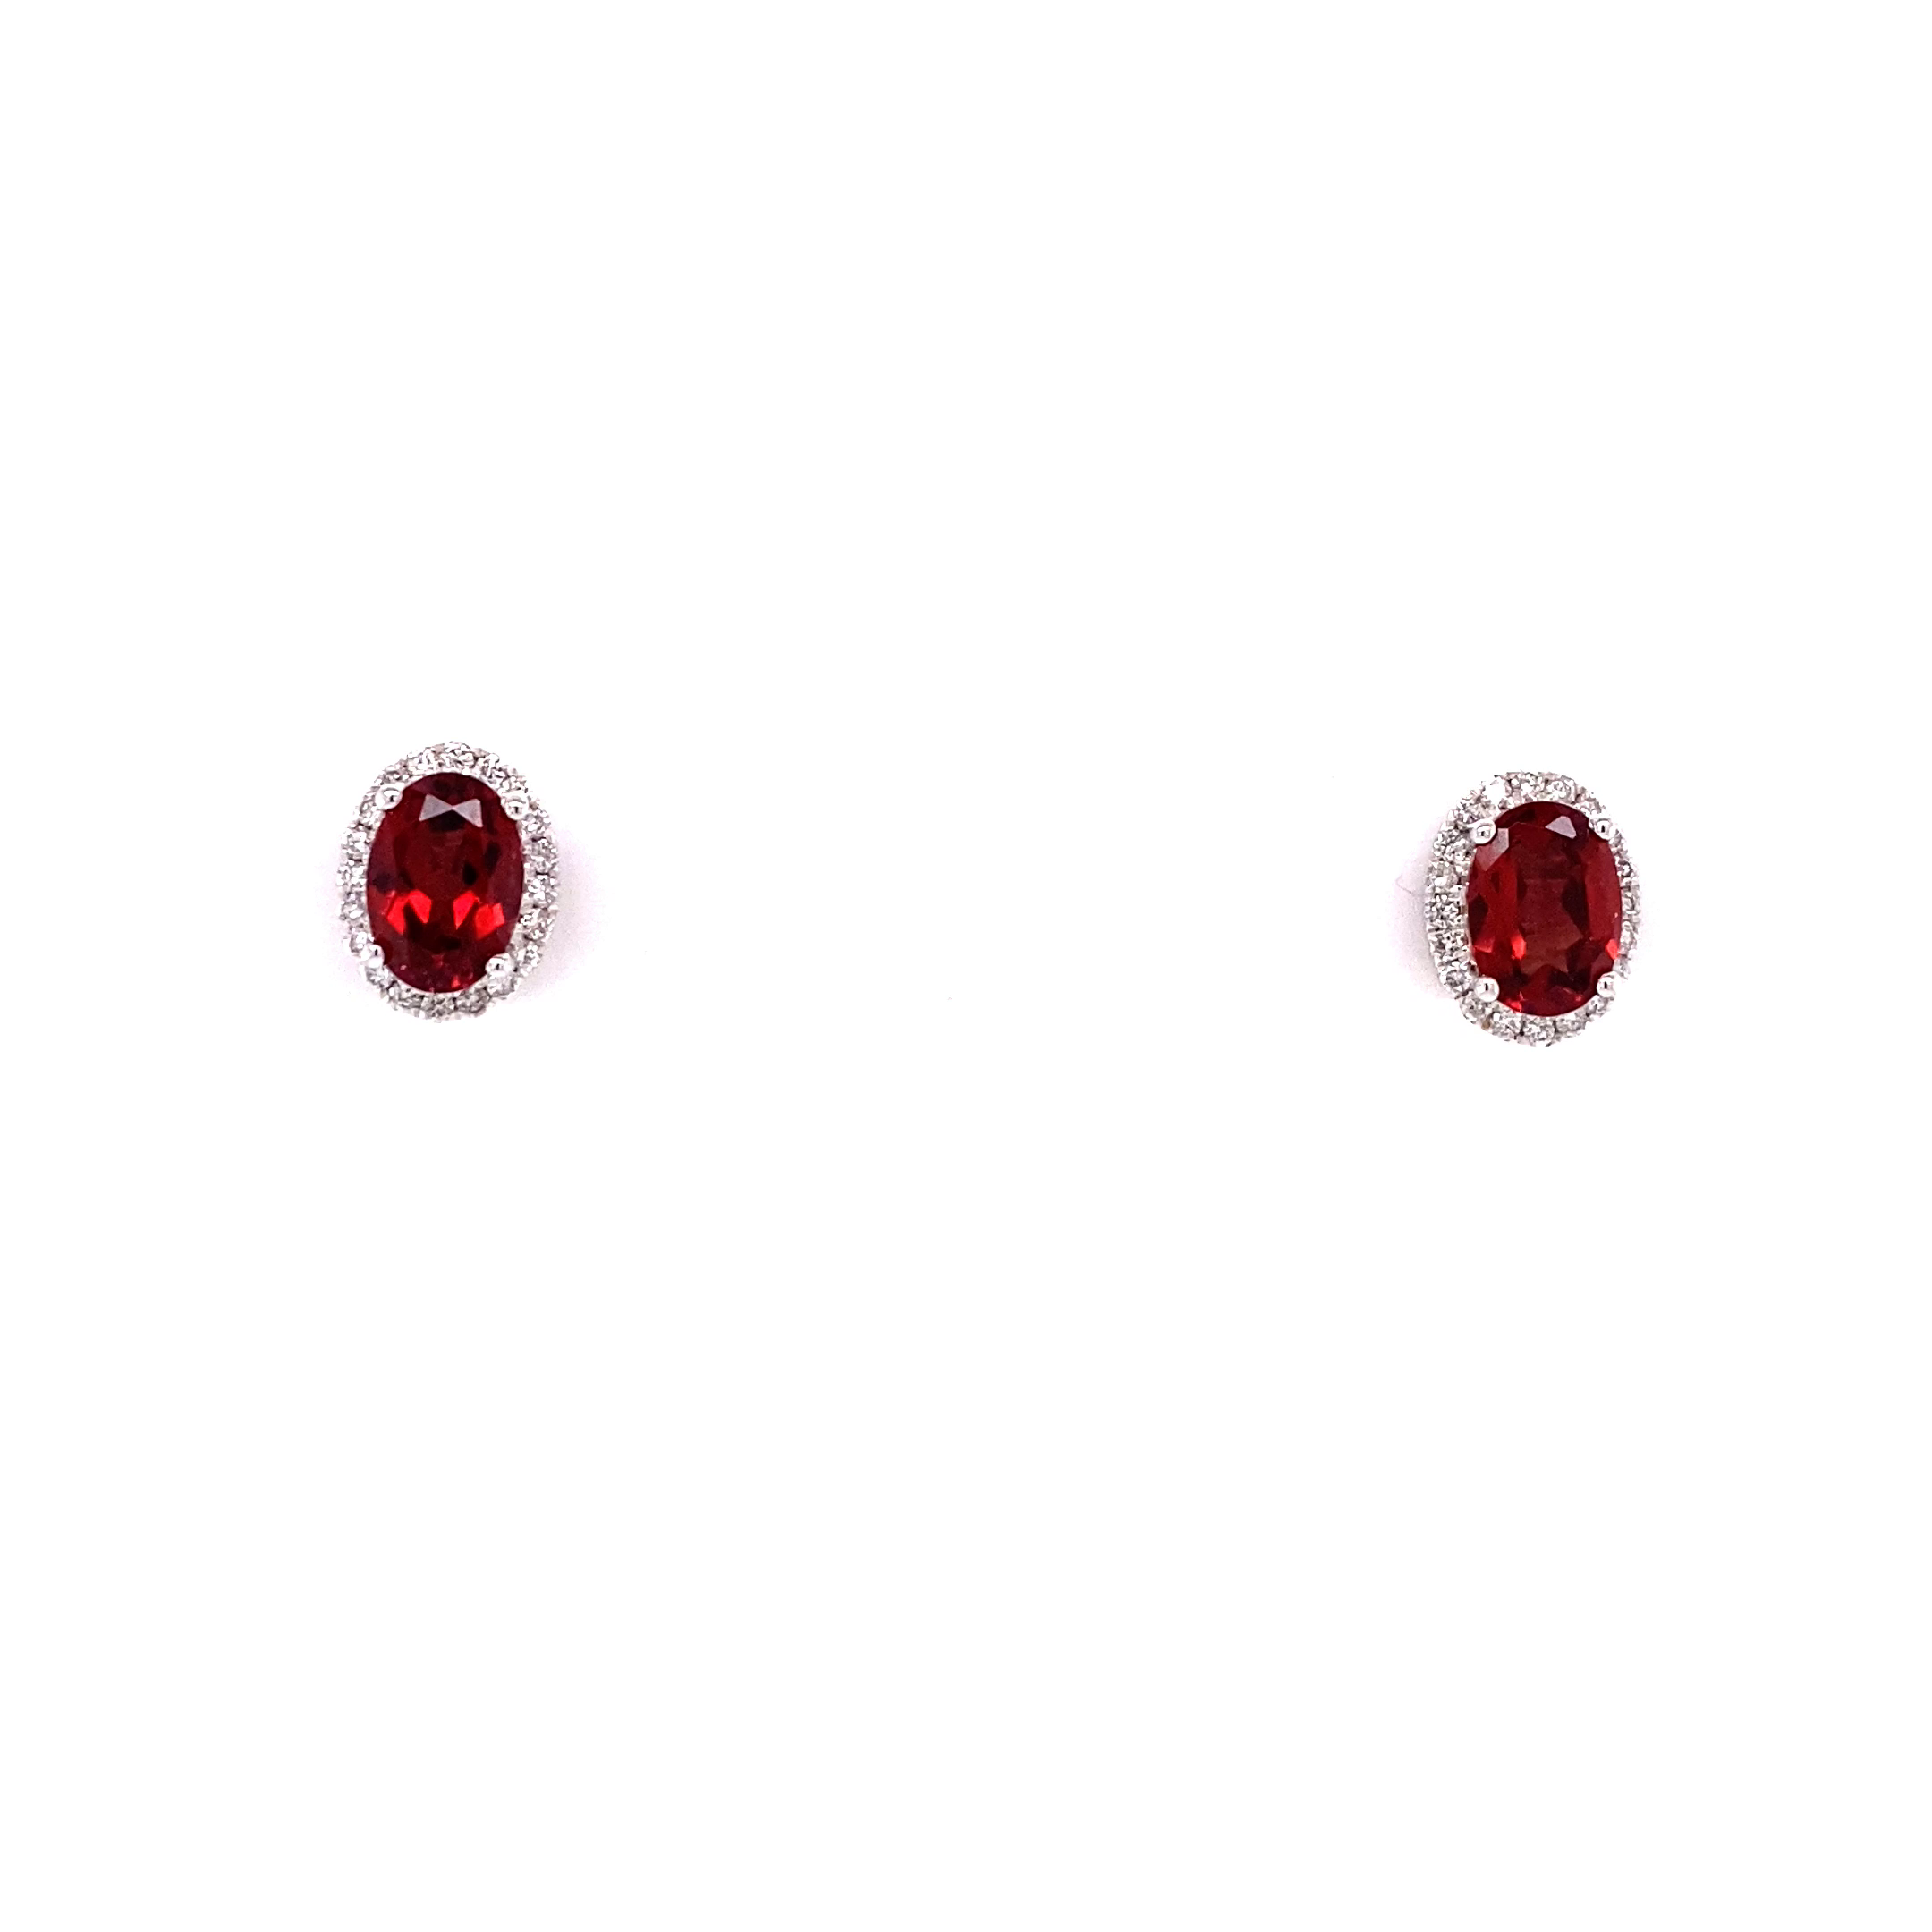 14KW Oval Garnet And Diamond Halo Stud earrings (Under $1k)